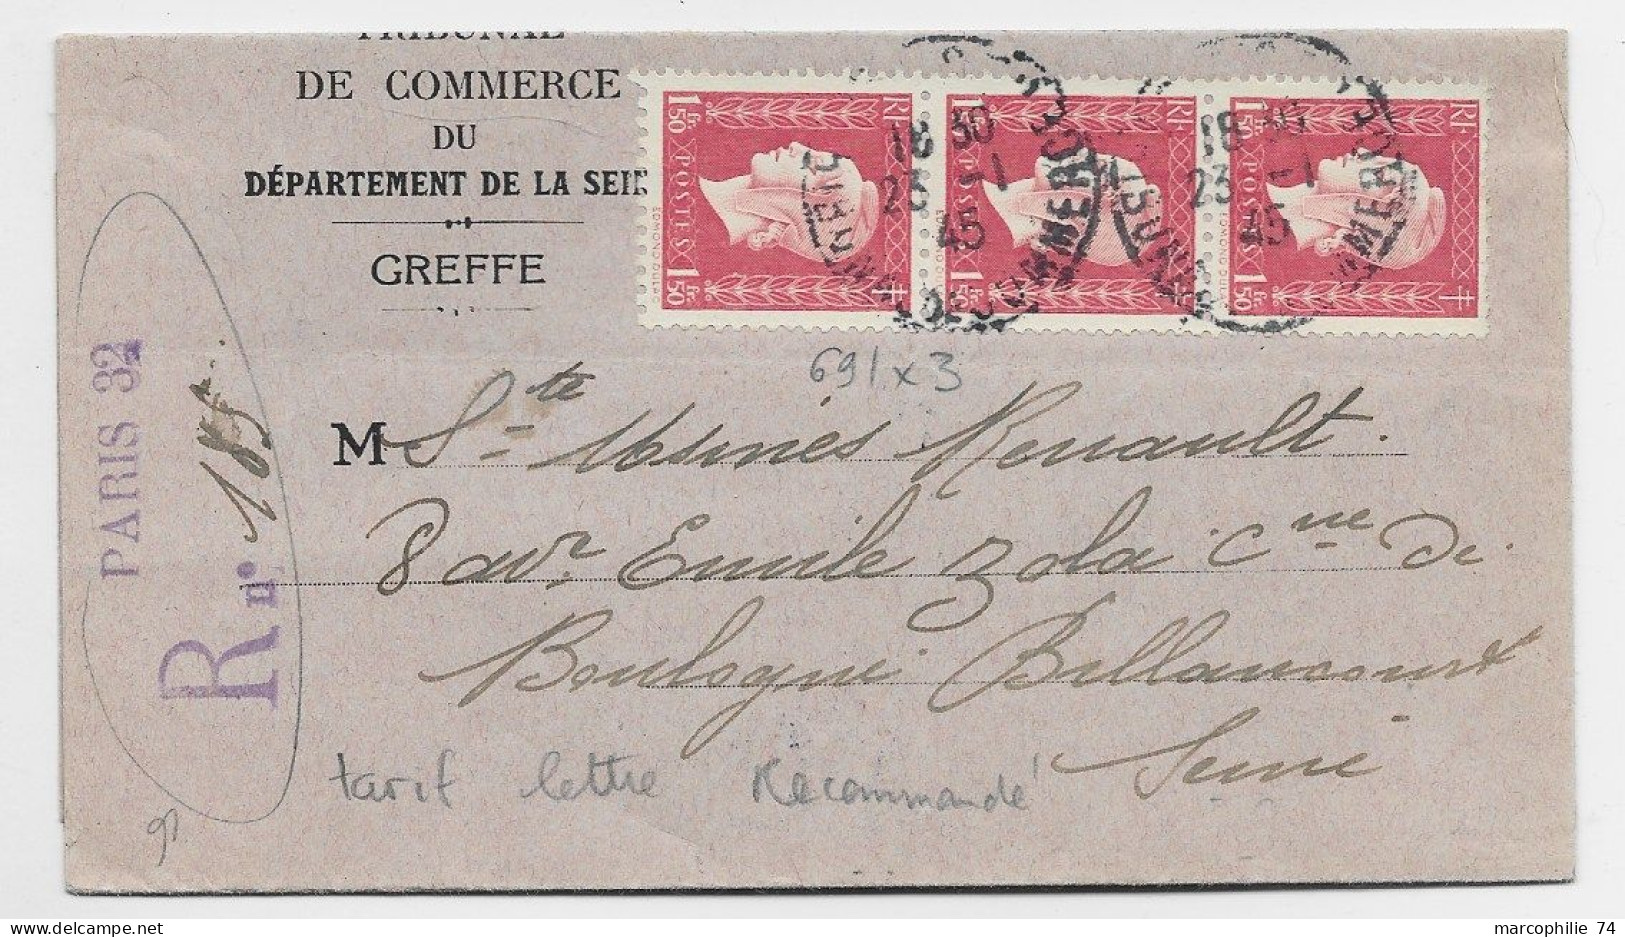 DULAC 1FR50 BANDE DE 3 LETTRE REC PEROVISOIRE PARIS 32 25.1.1945 AU TARIF - 1944-45 Marianne Of Dulac